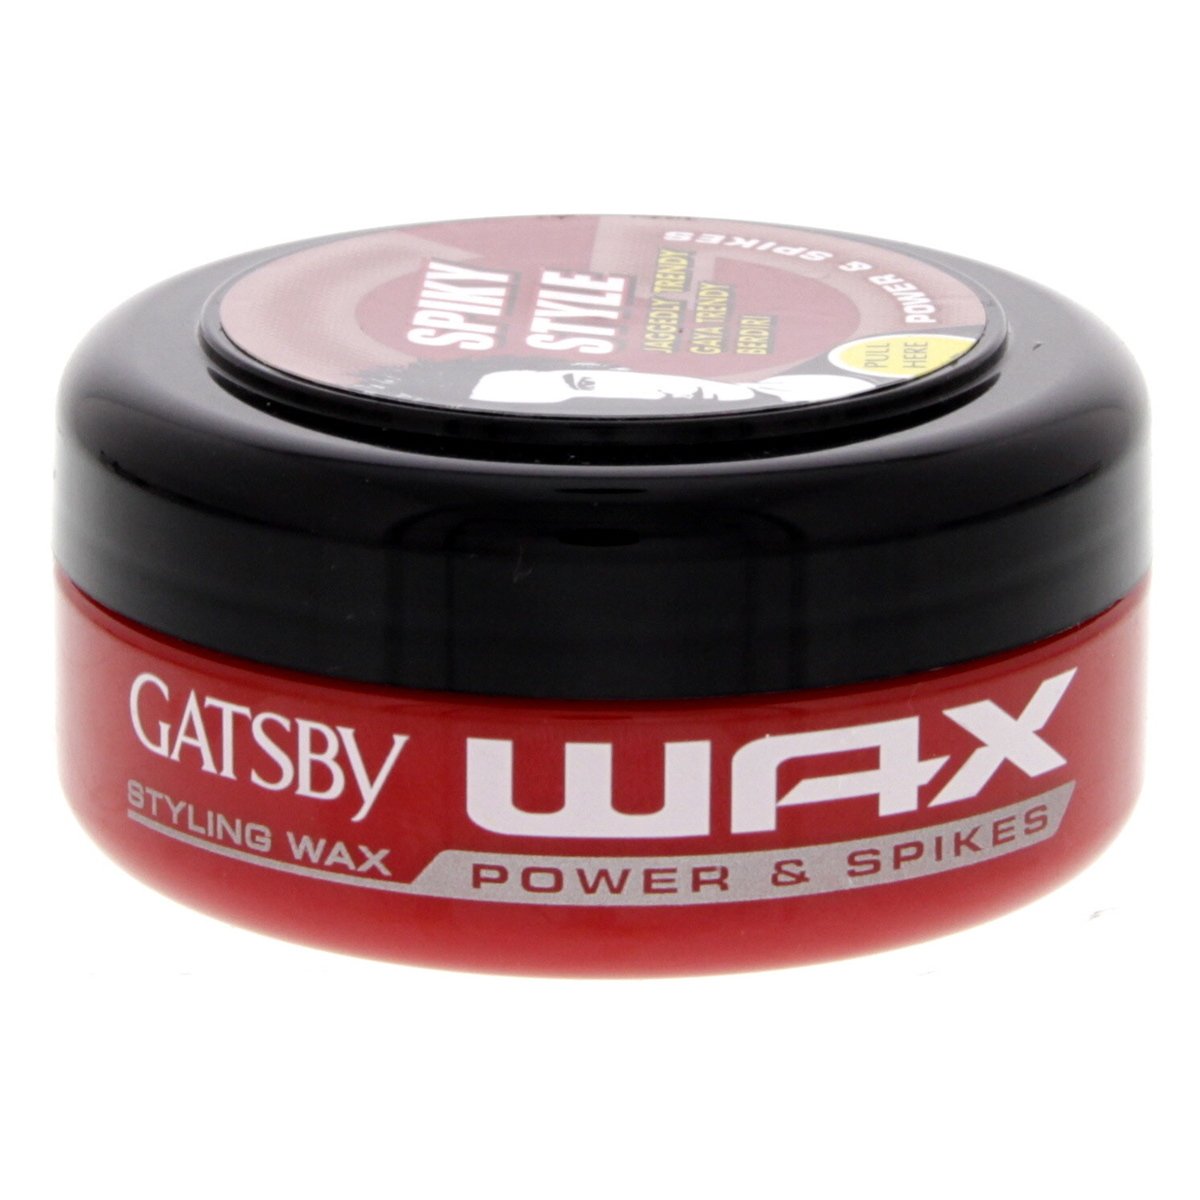 Gatsby Hair Wax Power & Spikes 75 g